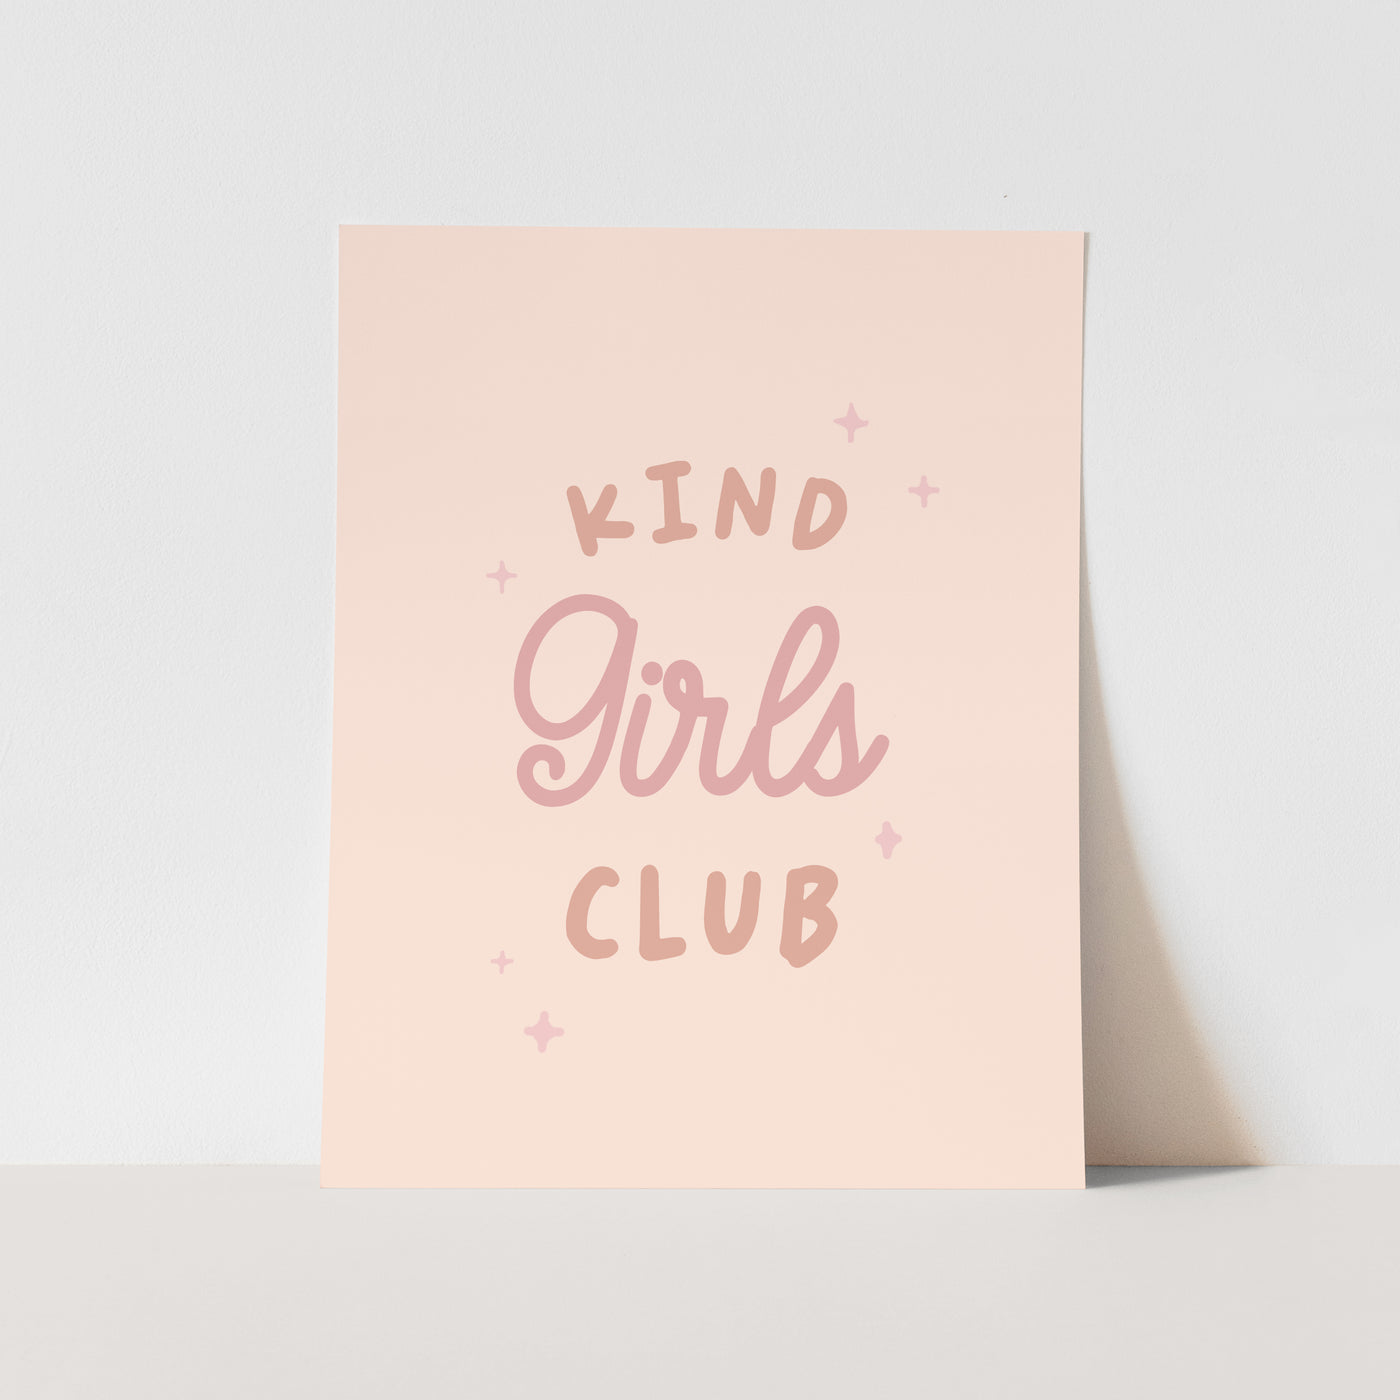 Art Print: Kind Girls Club